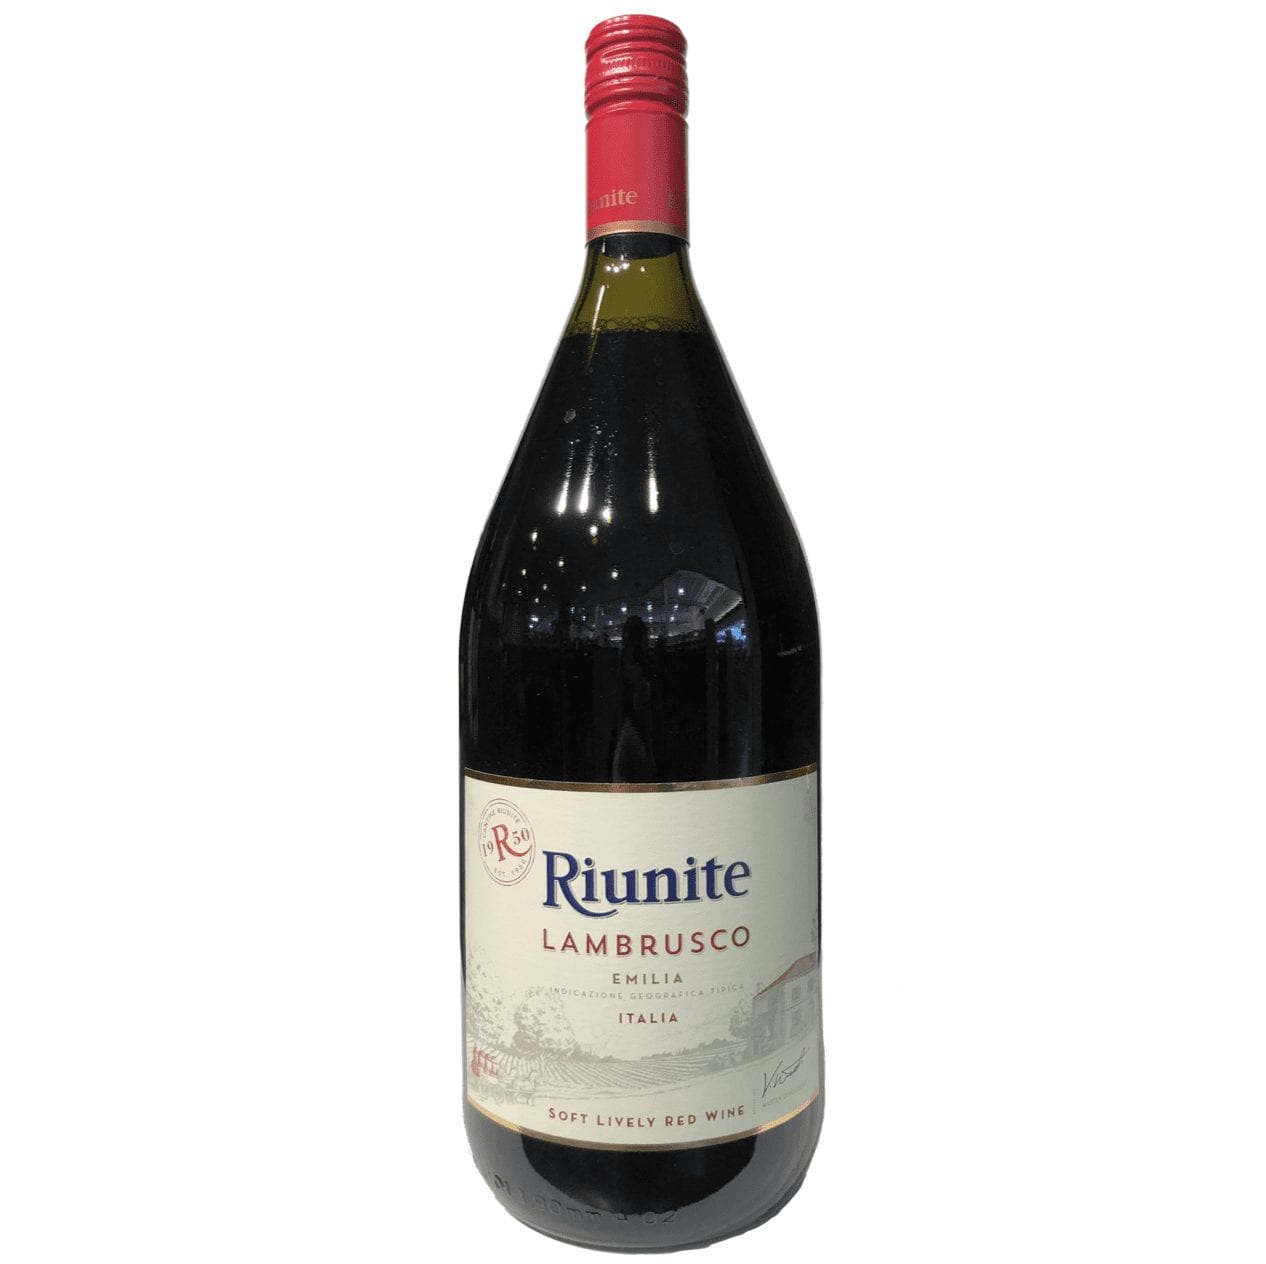 Riunite Lambrusco Red Wine. Вино Риуните Ламбруско игр.к.п/сл 0.75л. Риуните Ламбруско. Ламбруско вино Ладога. Riunite lambrusco